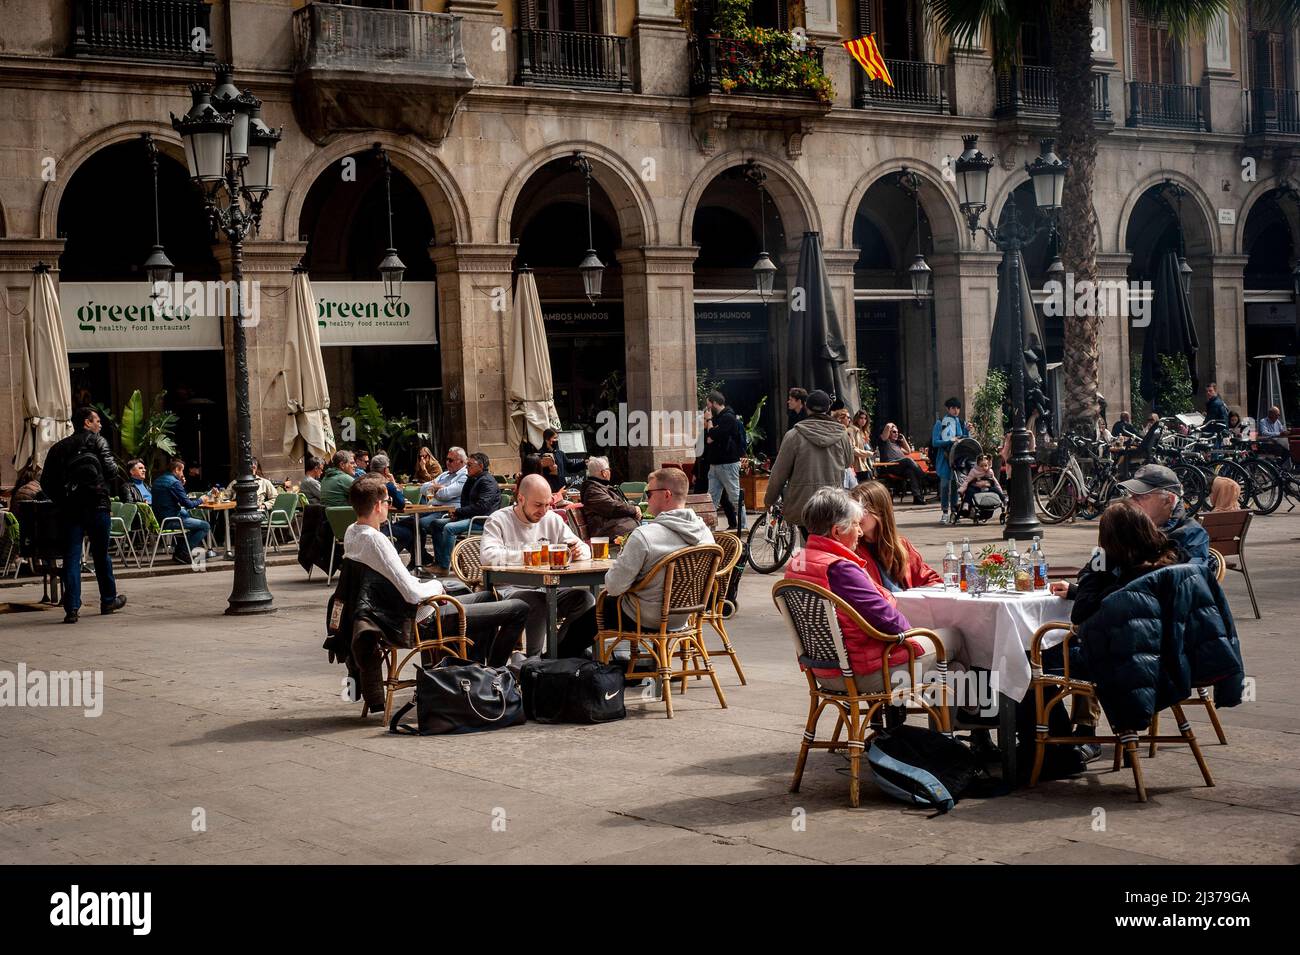 La gente si siede in una terrazza della Plaza Real di Barcellona. L'industria turistica di Barcellona prevede il 70% di occupazione alberghiera durante le vacanze della settimana Santa e quindi avvicinarsi al numero di visitatori pre-pandemici. Foto Stock